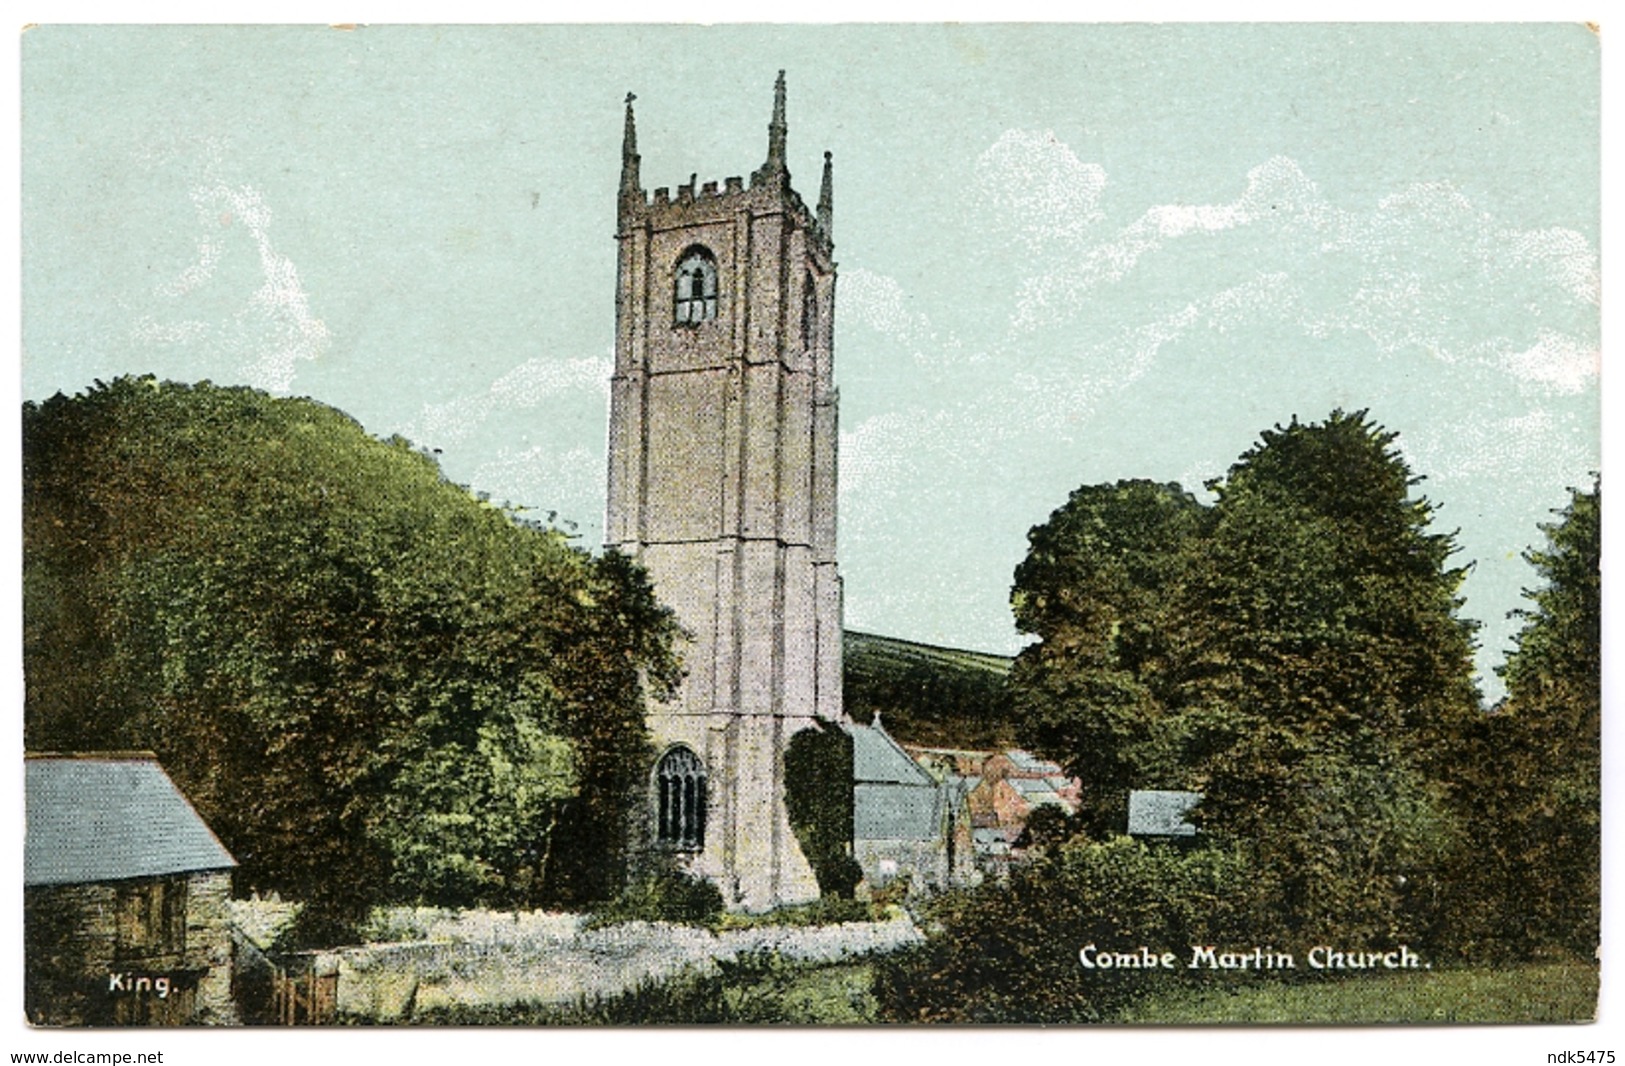 COMBE MARTIN CHURCH - Ilfracombe